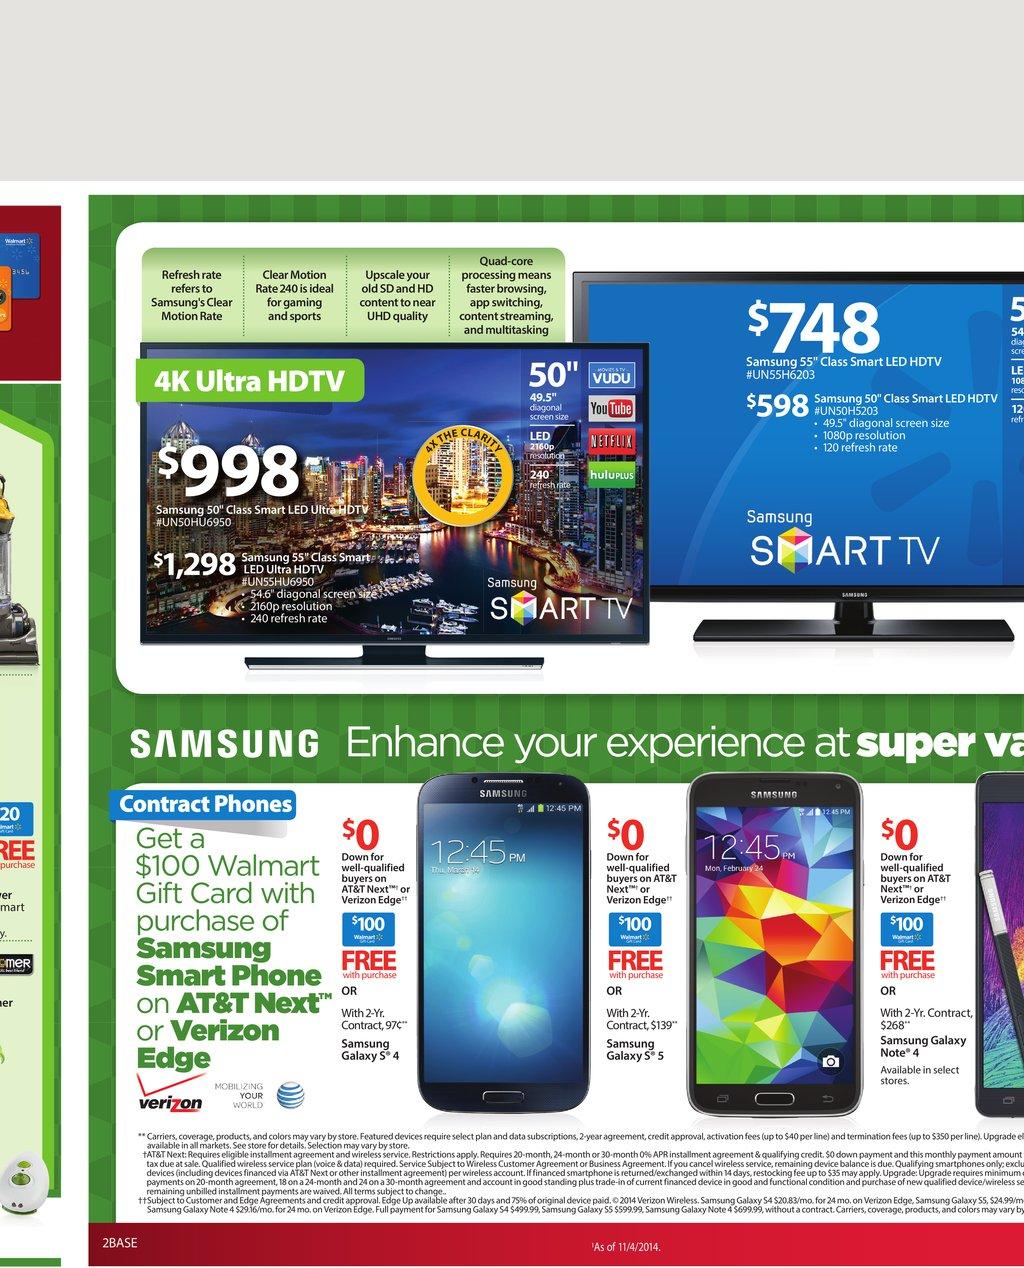 Walmart Weekly Ads Christmas Gifts 2014 WeeklyAds2